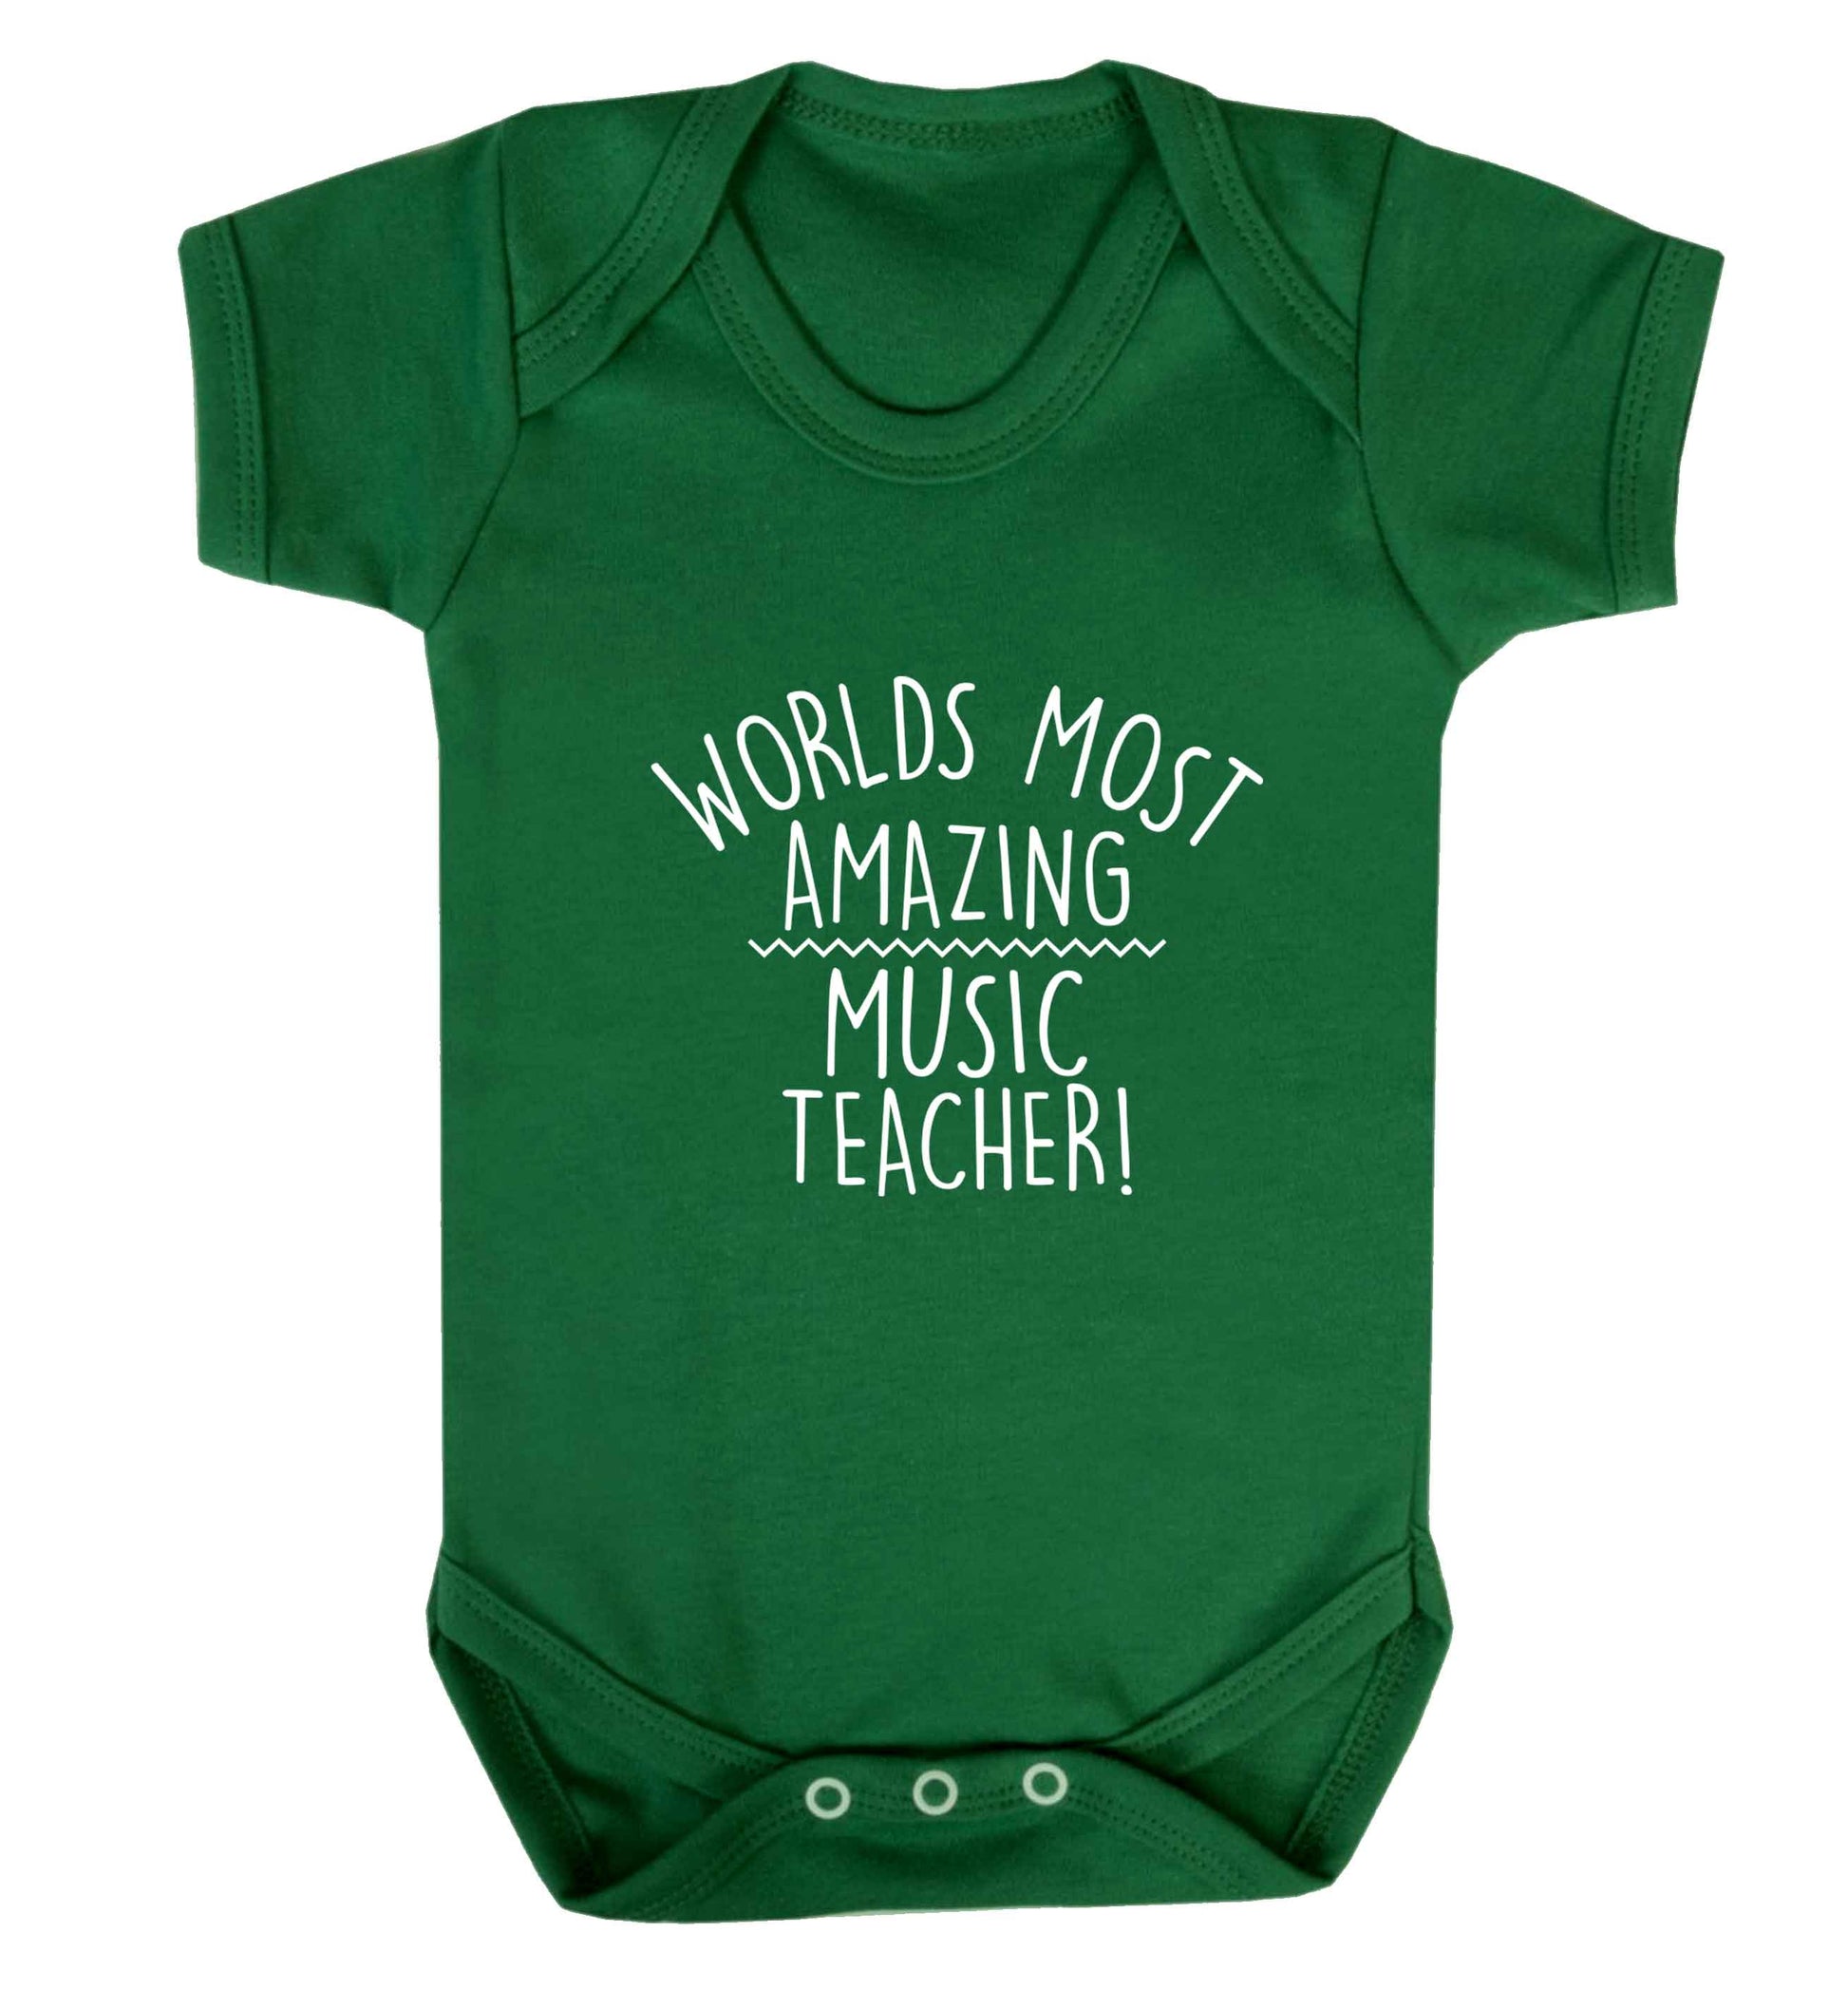 Worlds most amazing music teacher baby vest green 18-24 months